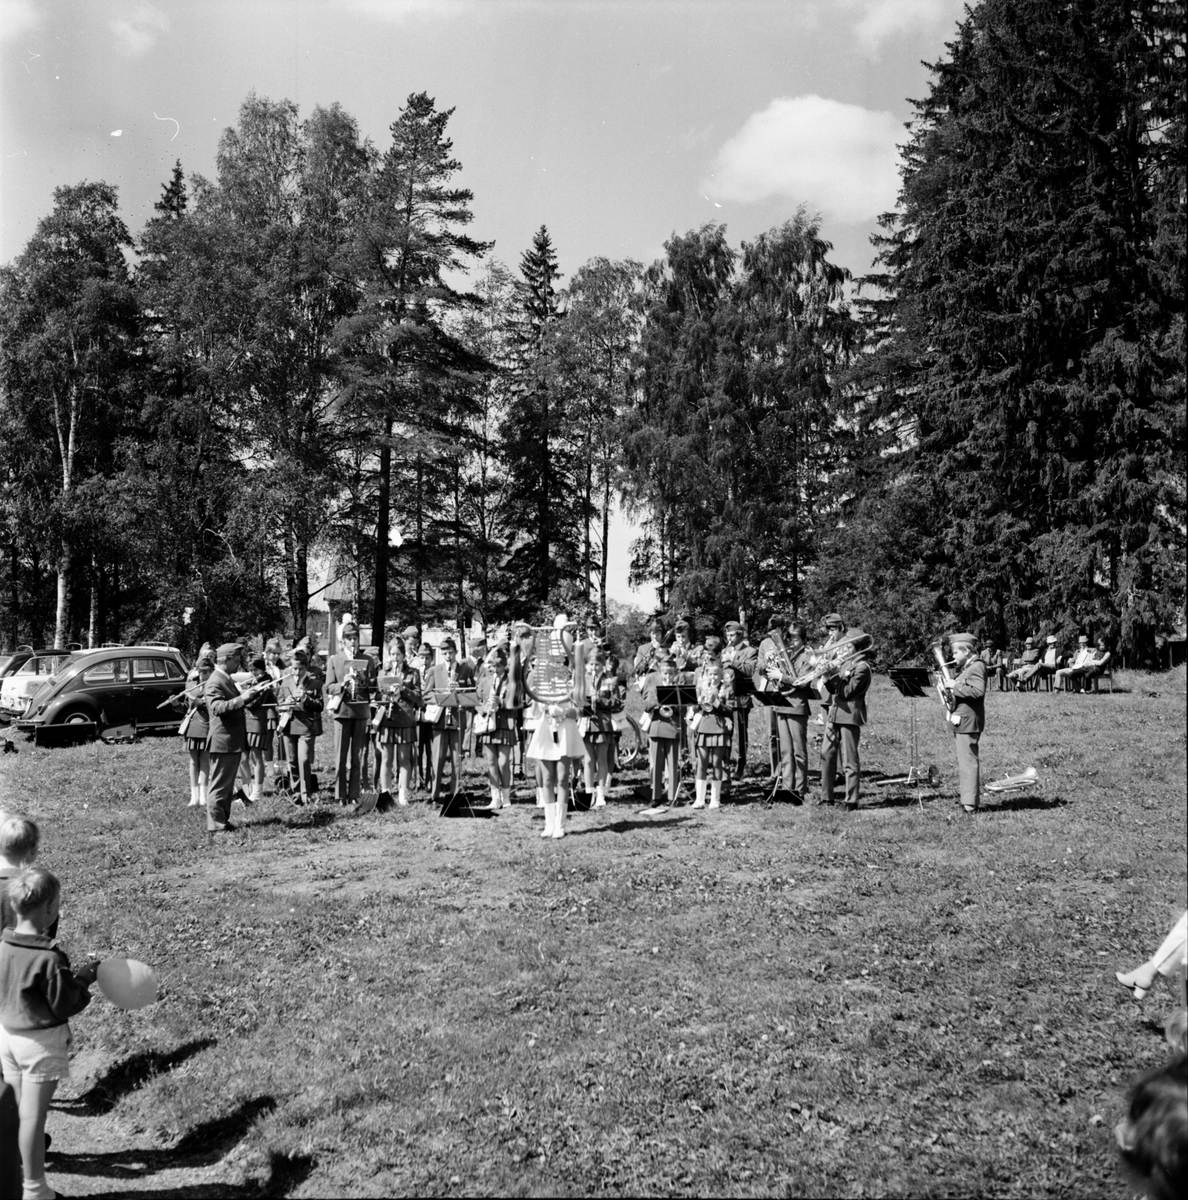 Arbrå,
Jordbrukets dag på Nytorp,
Juni 1971